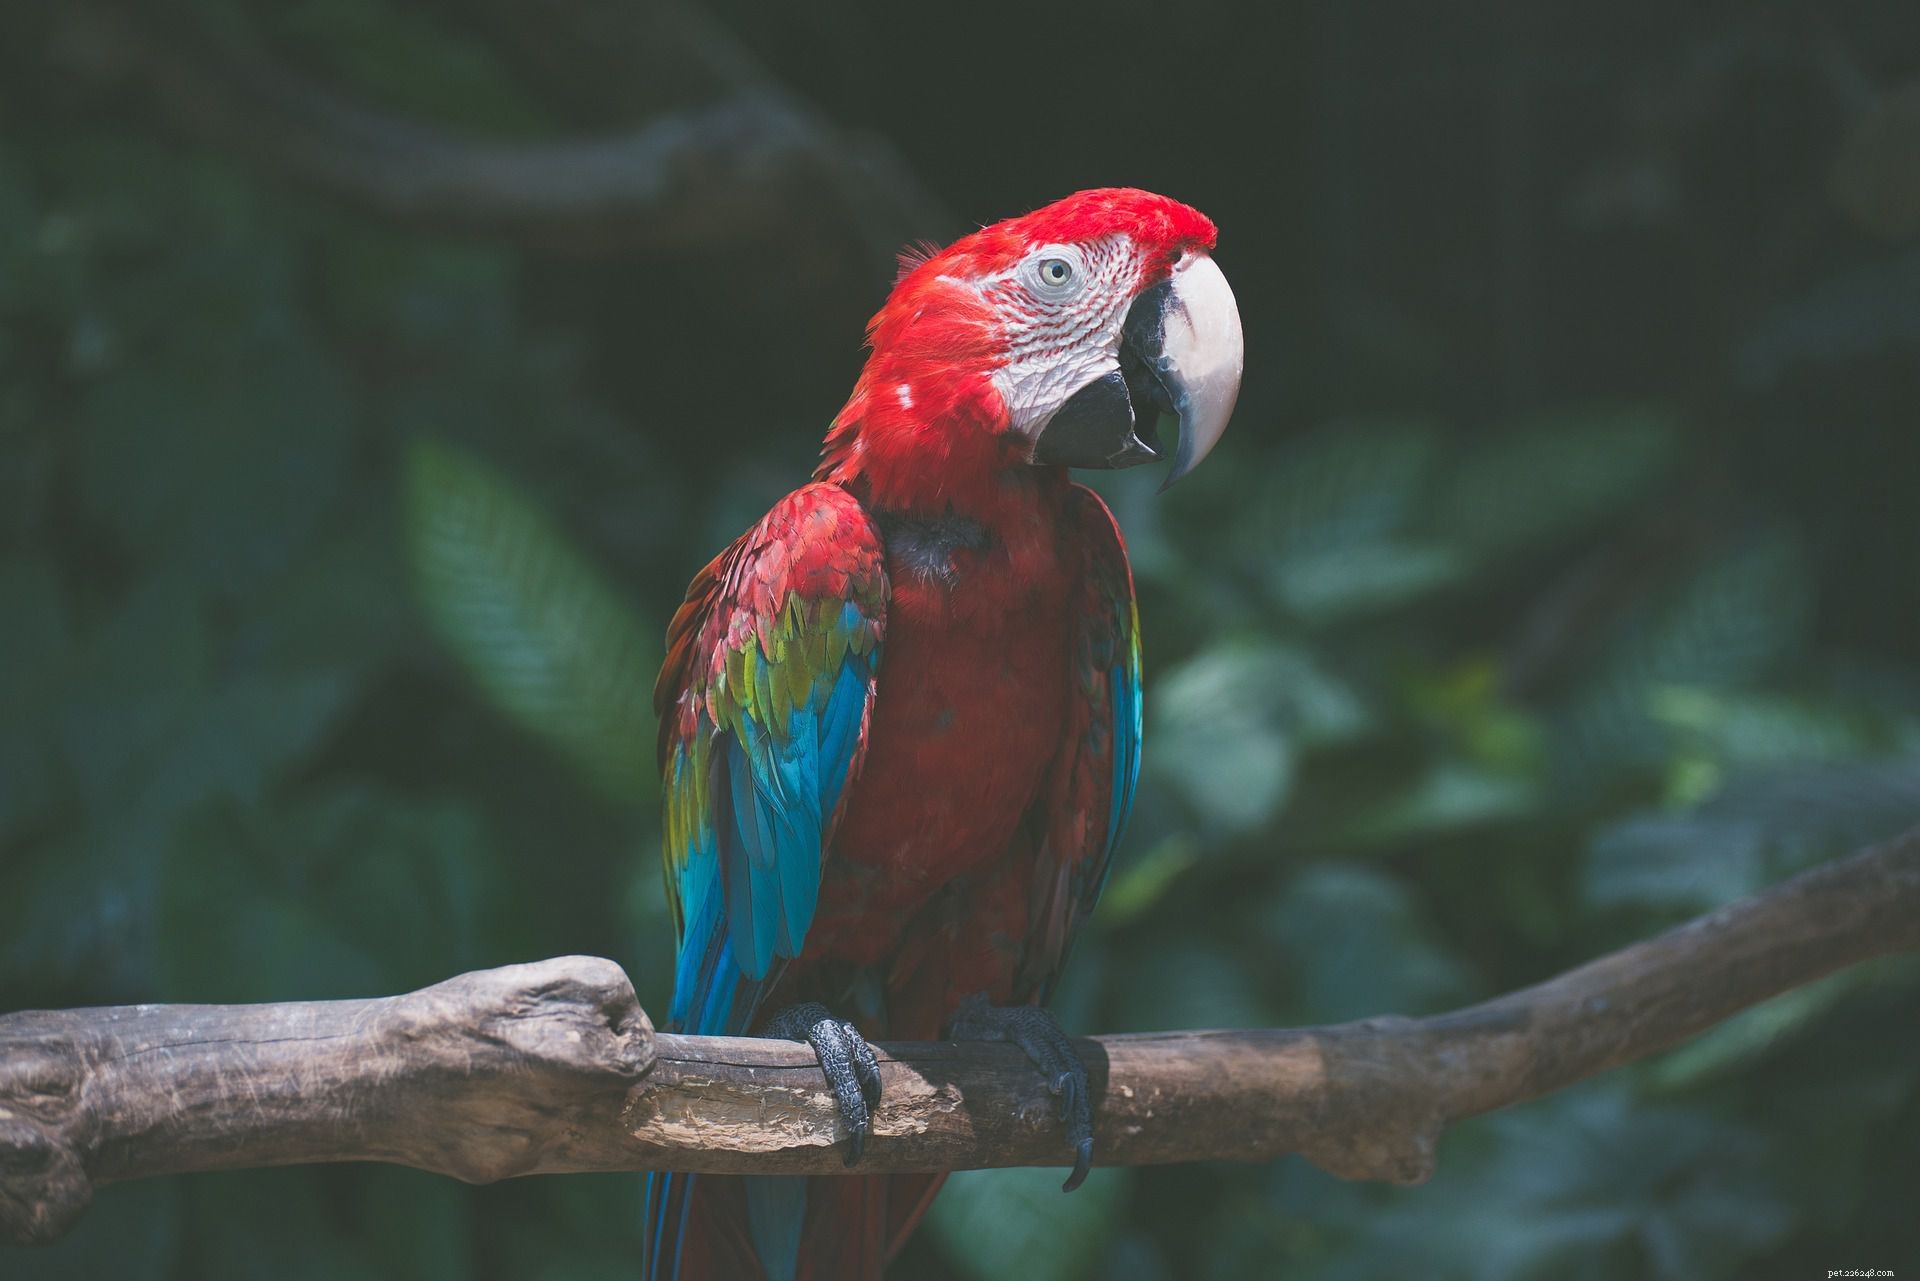 I 5 migliori pappagalli grandi da tenere come animali domestici